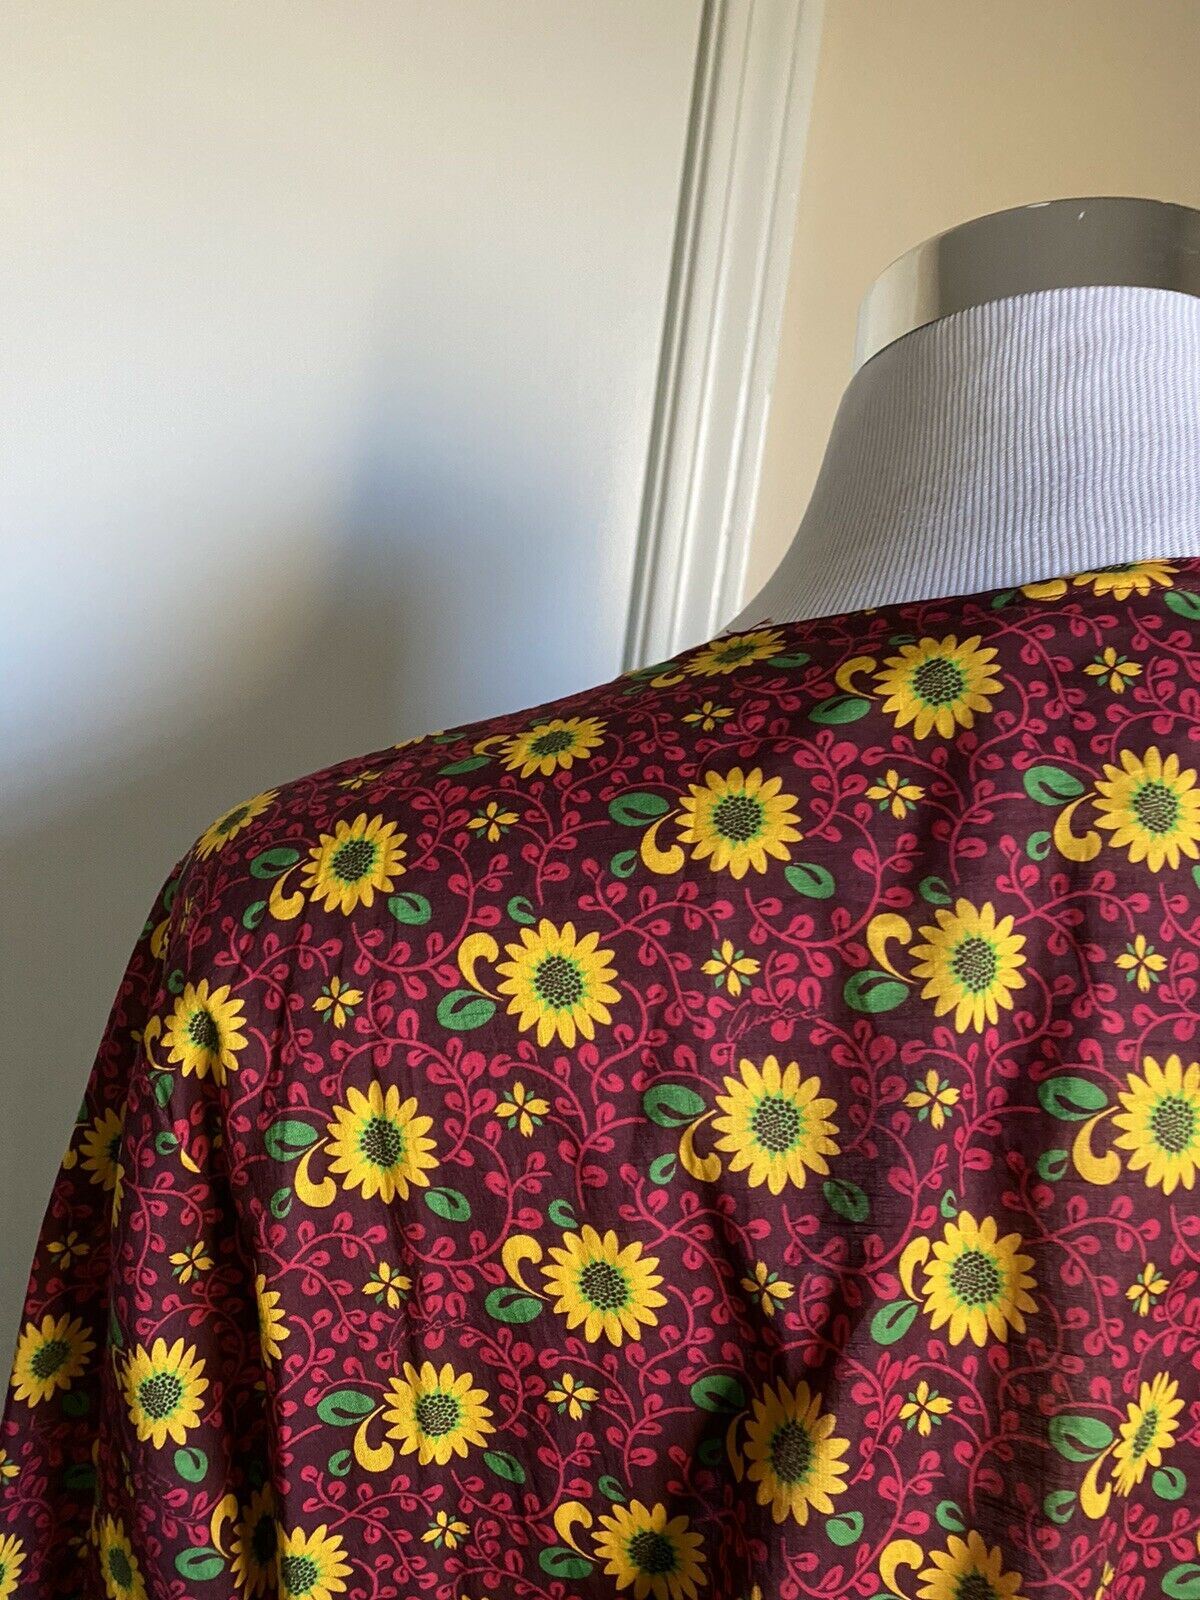 Новая рубашка Gucci Sunflower on Mublin, желтый/красный, размер L (50 евро), Италия